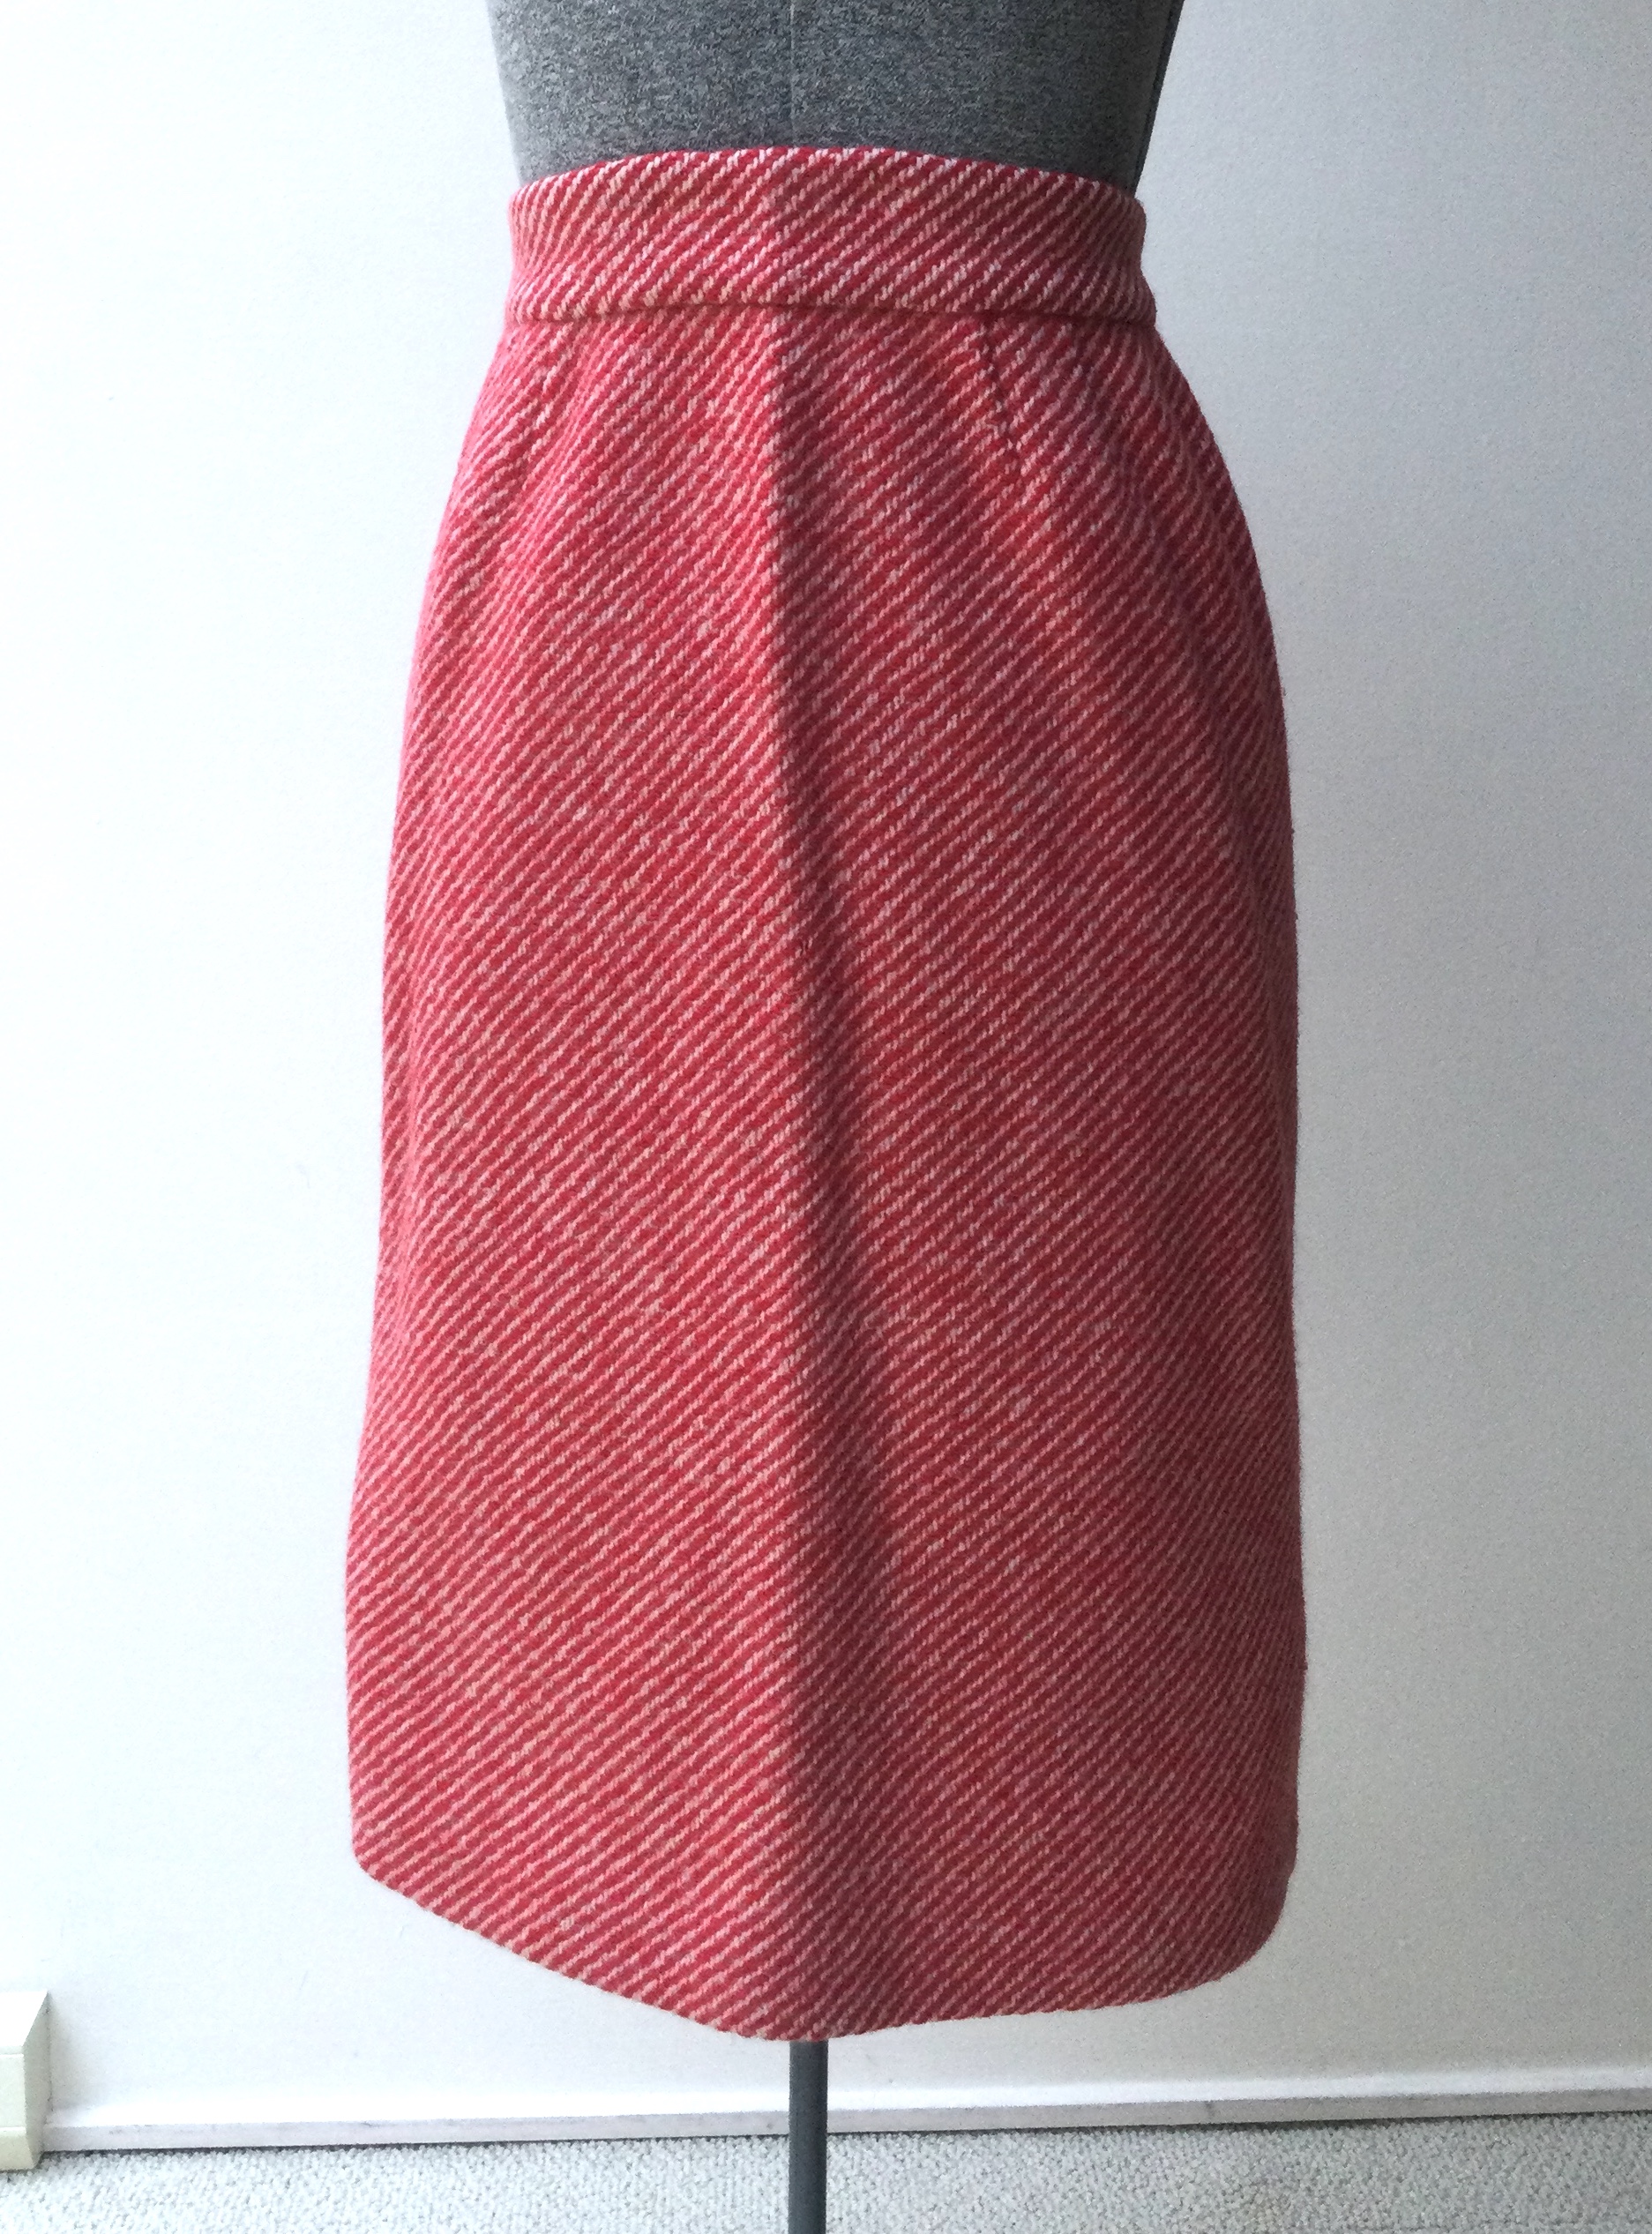 the skirt